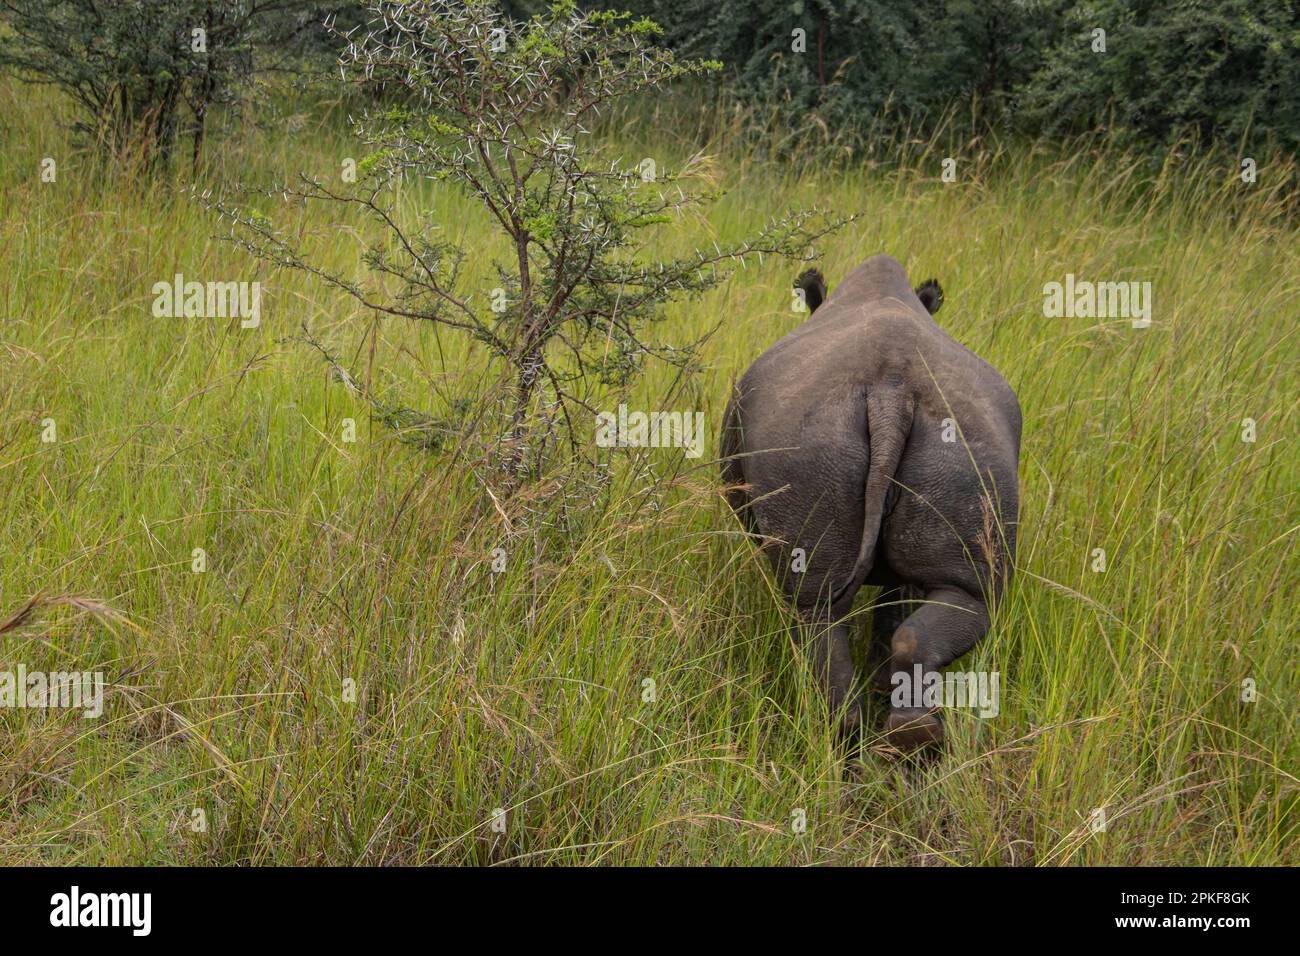 Rhinocéros blanc ou rhinocéros à lèvres carrées (Ceratotherium simum) à Imire Rhino & Wildlife Conservancy, Zimbabwe, espèce en voie de disparition Banque D'Images